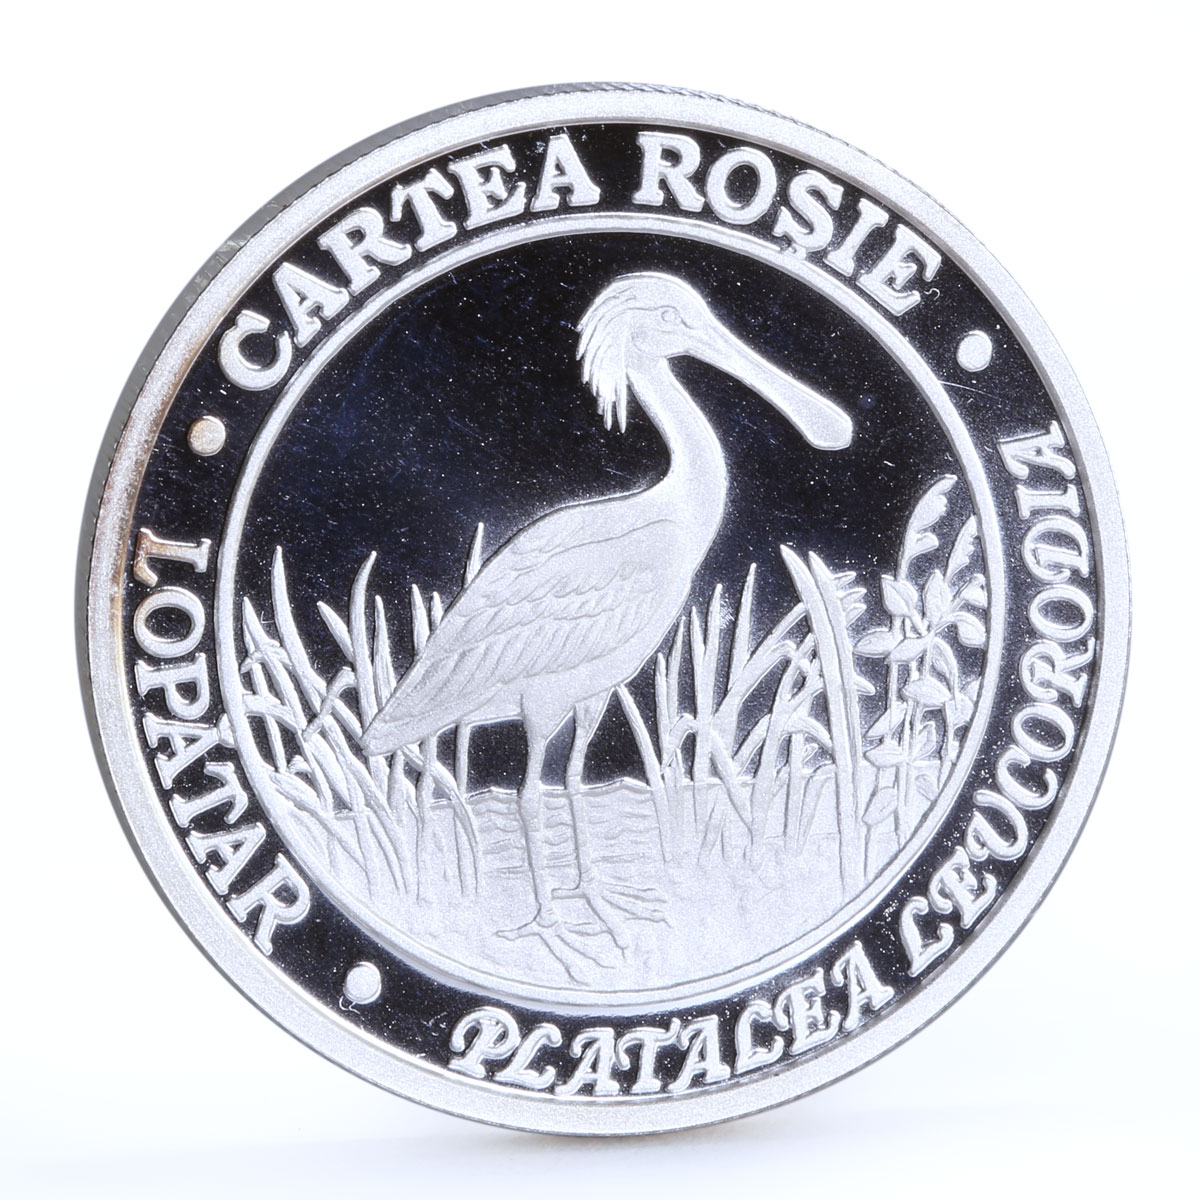 Moldova 50 lei Endangered Wildlife Eurasian Spoonbill Bird silver coin 2011